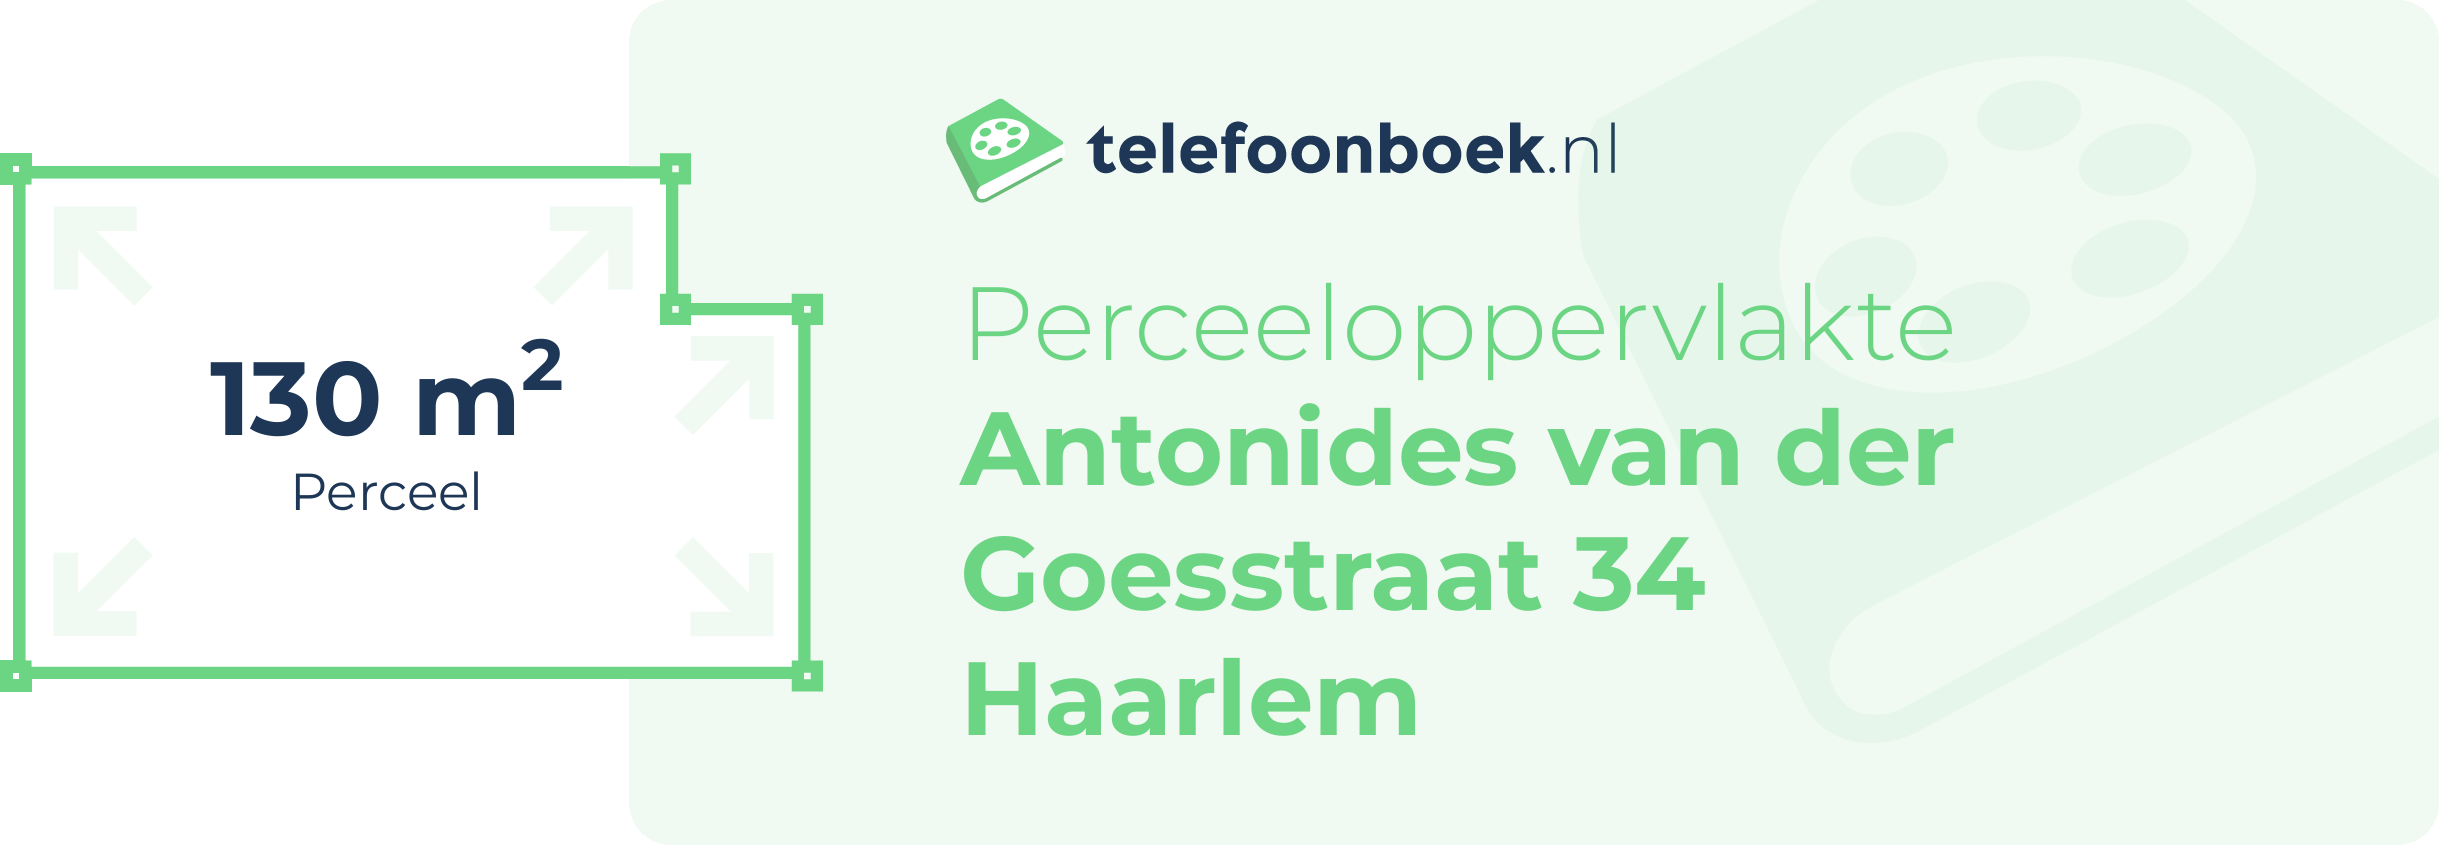 Perceeloppervlakte Antonides Van Der Goesstraat 34 Haarlem